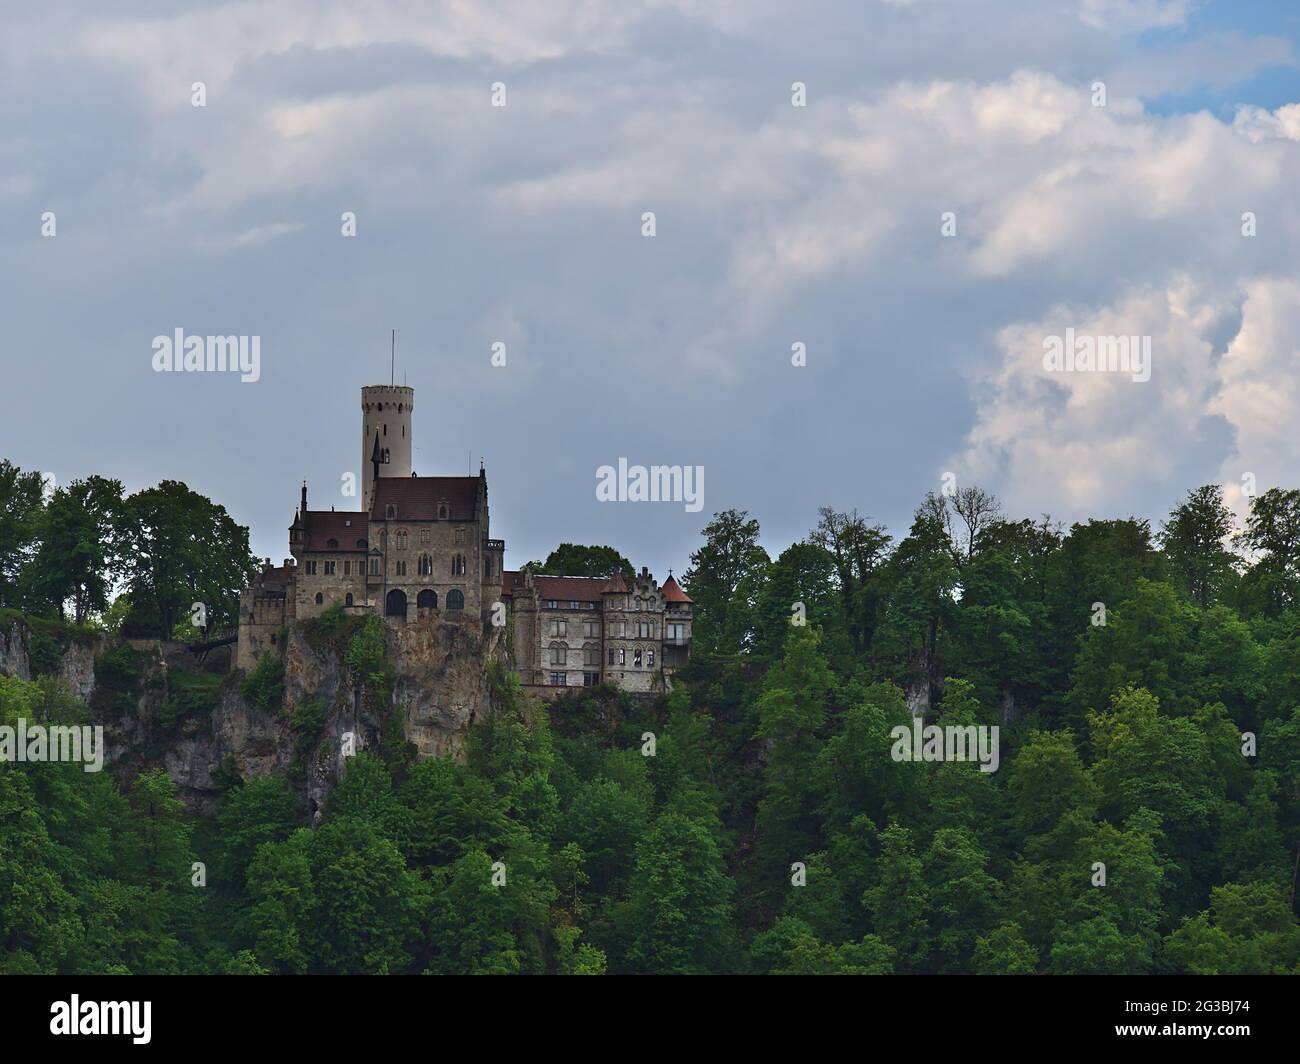 Splendida vista del popolare castello di Lichtenstein (costruito nel 1842, stile gotico-revival) situato sulla roccia al limitare dell'Alb Svevo, Germania. Foto Stock